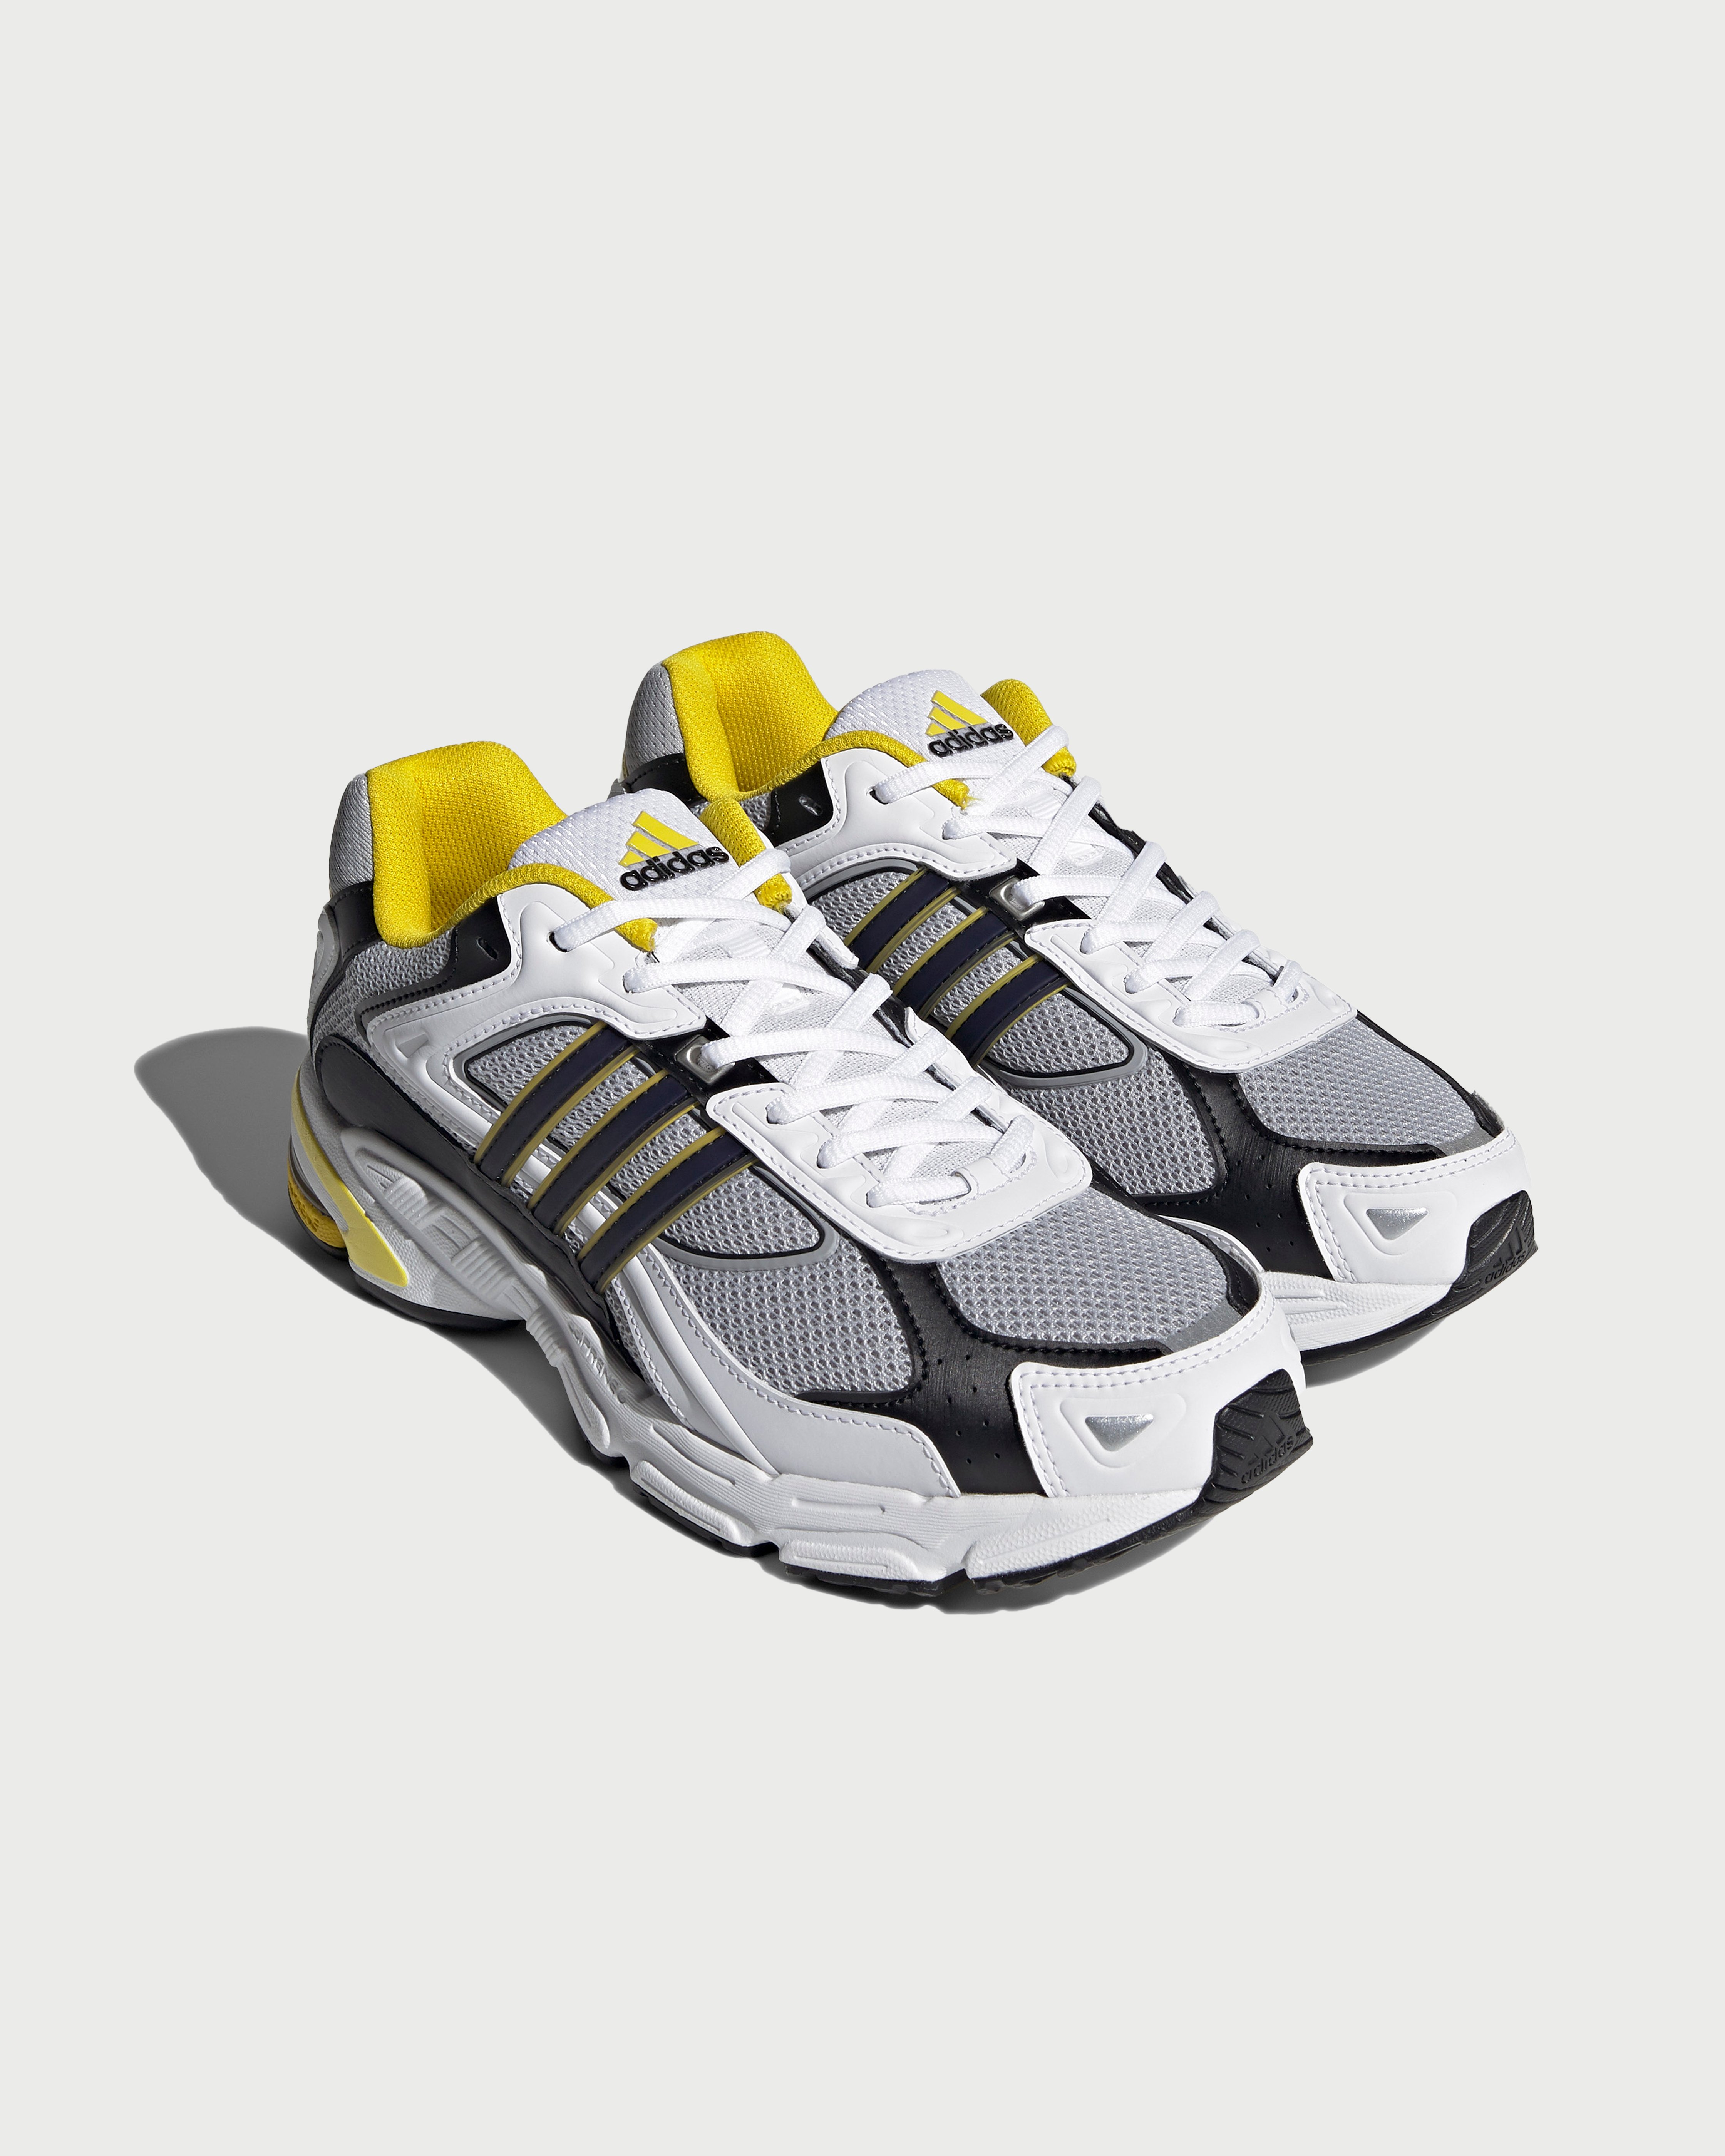 Adidas - Response CL White/Yellow - Footwear - White - Image 2